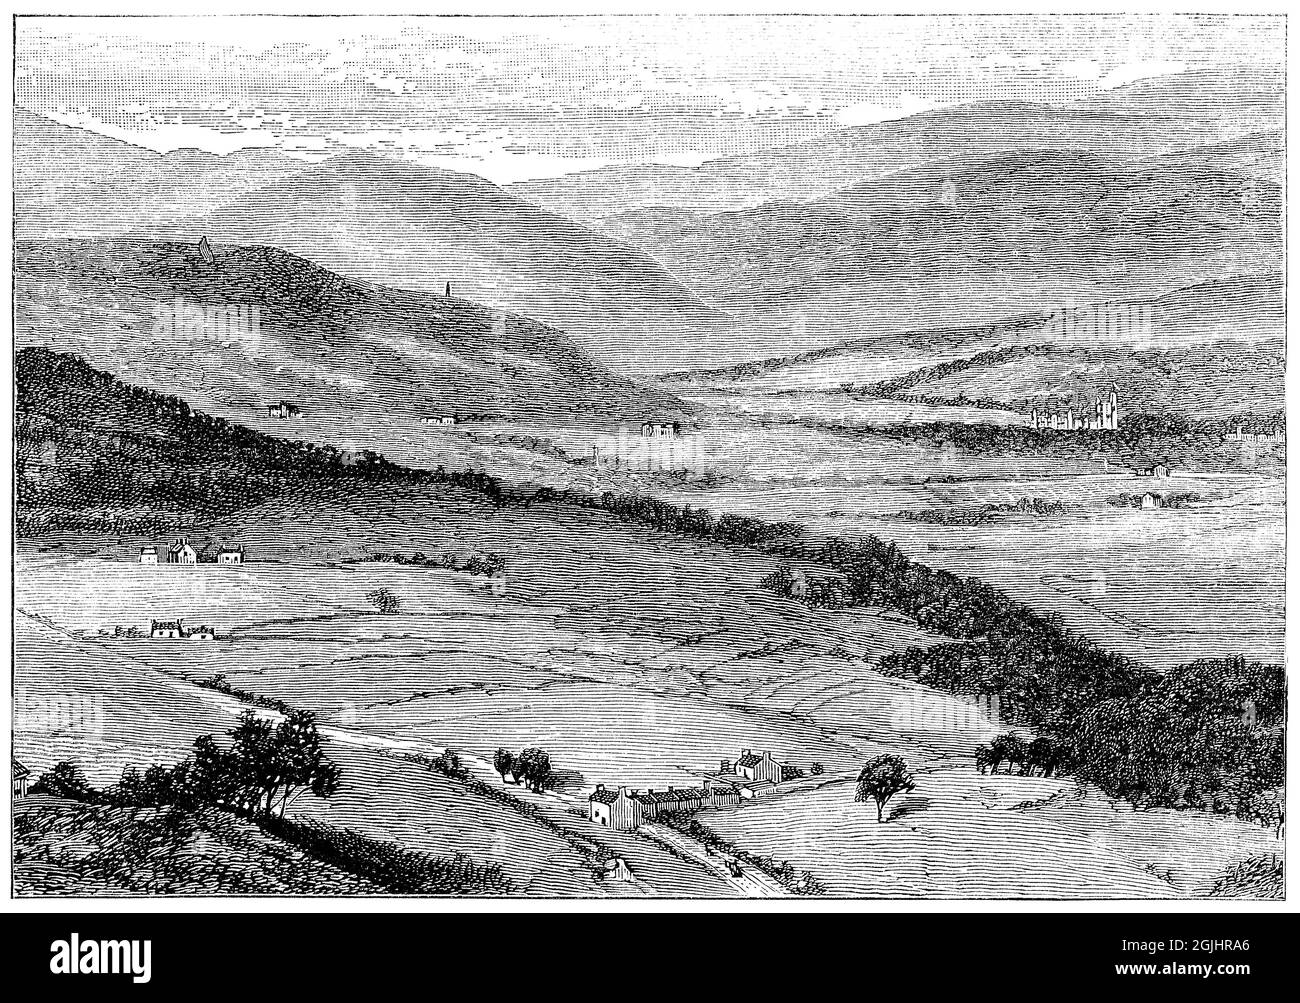 1887 grabado vintage del valle del río Dee con el castillo Balmoral en la distancia. Foto de stock